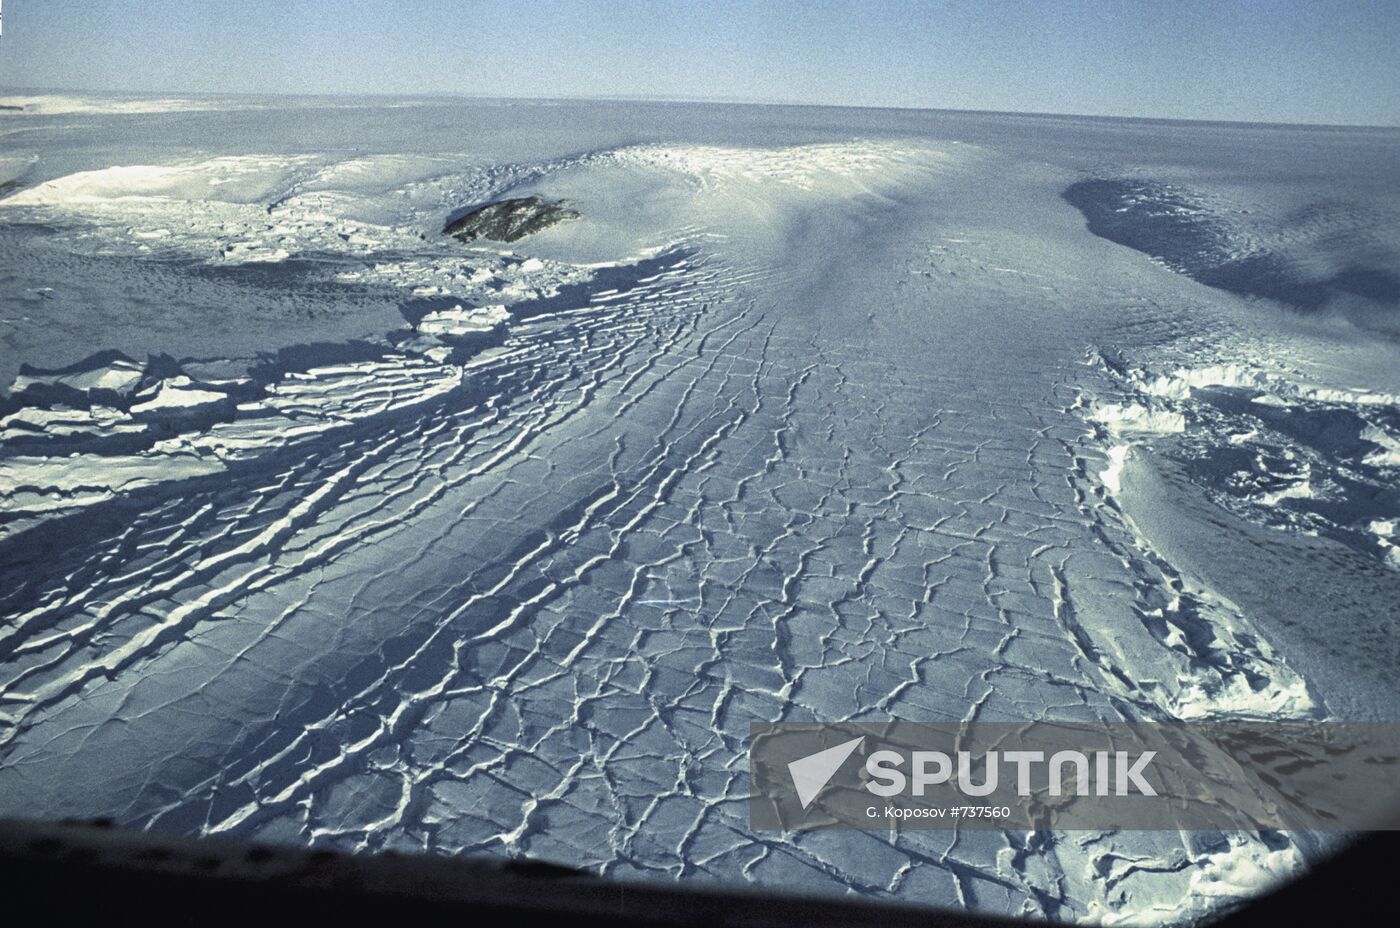 The Antarctic ice cap